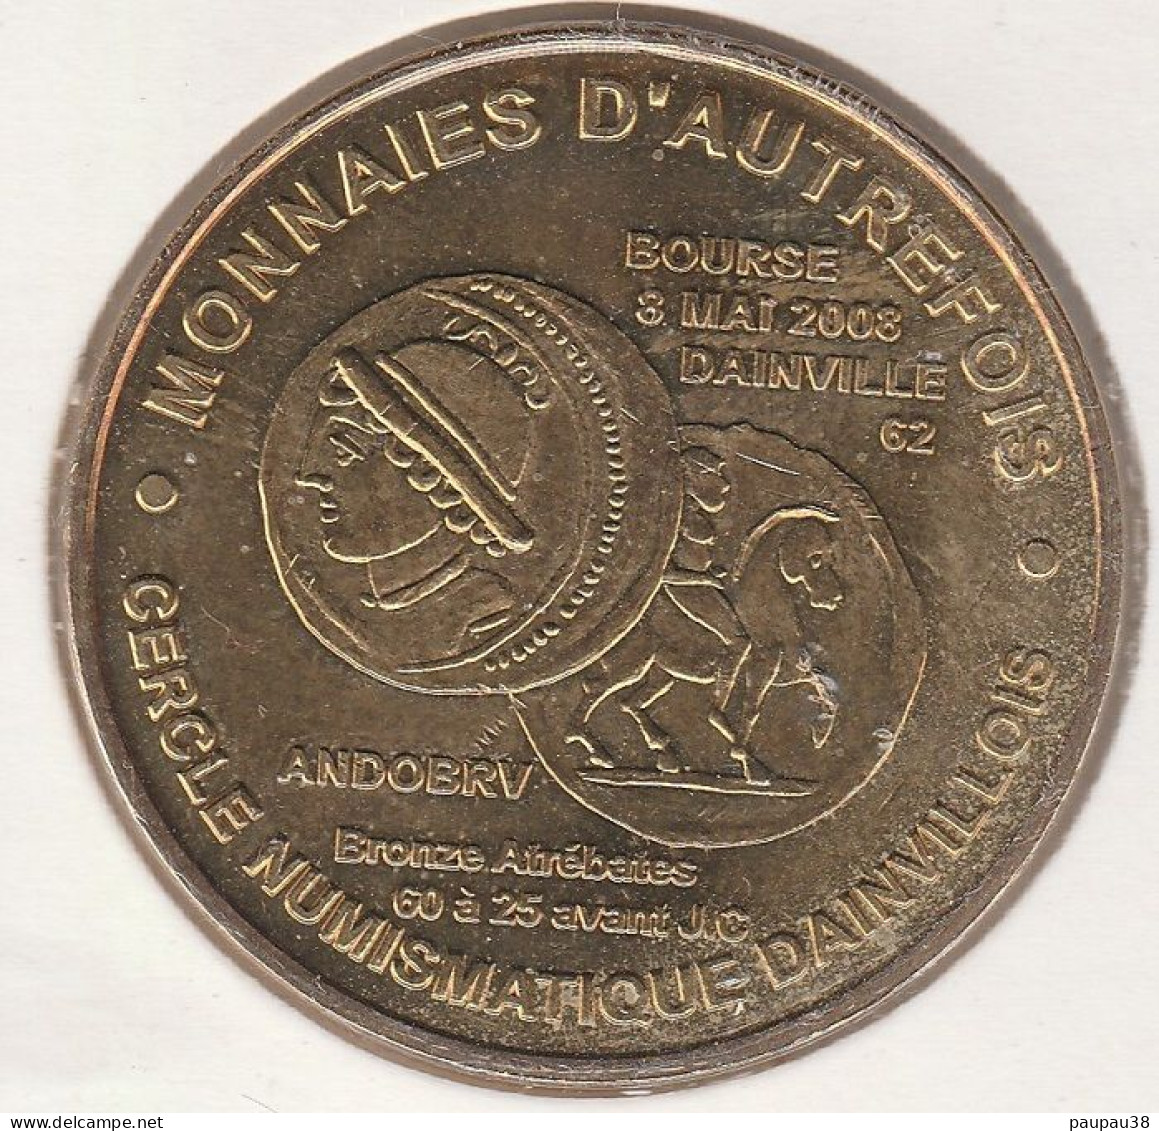 MONNAIE DE PARIS 2008 - 62 DAINVILLE 20ème Anniversaire Du CND - Monnaie D'ANDOBRV - 2008